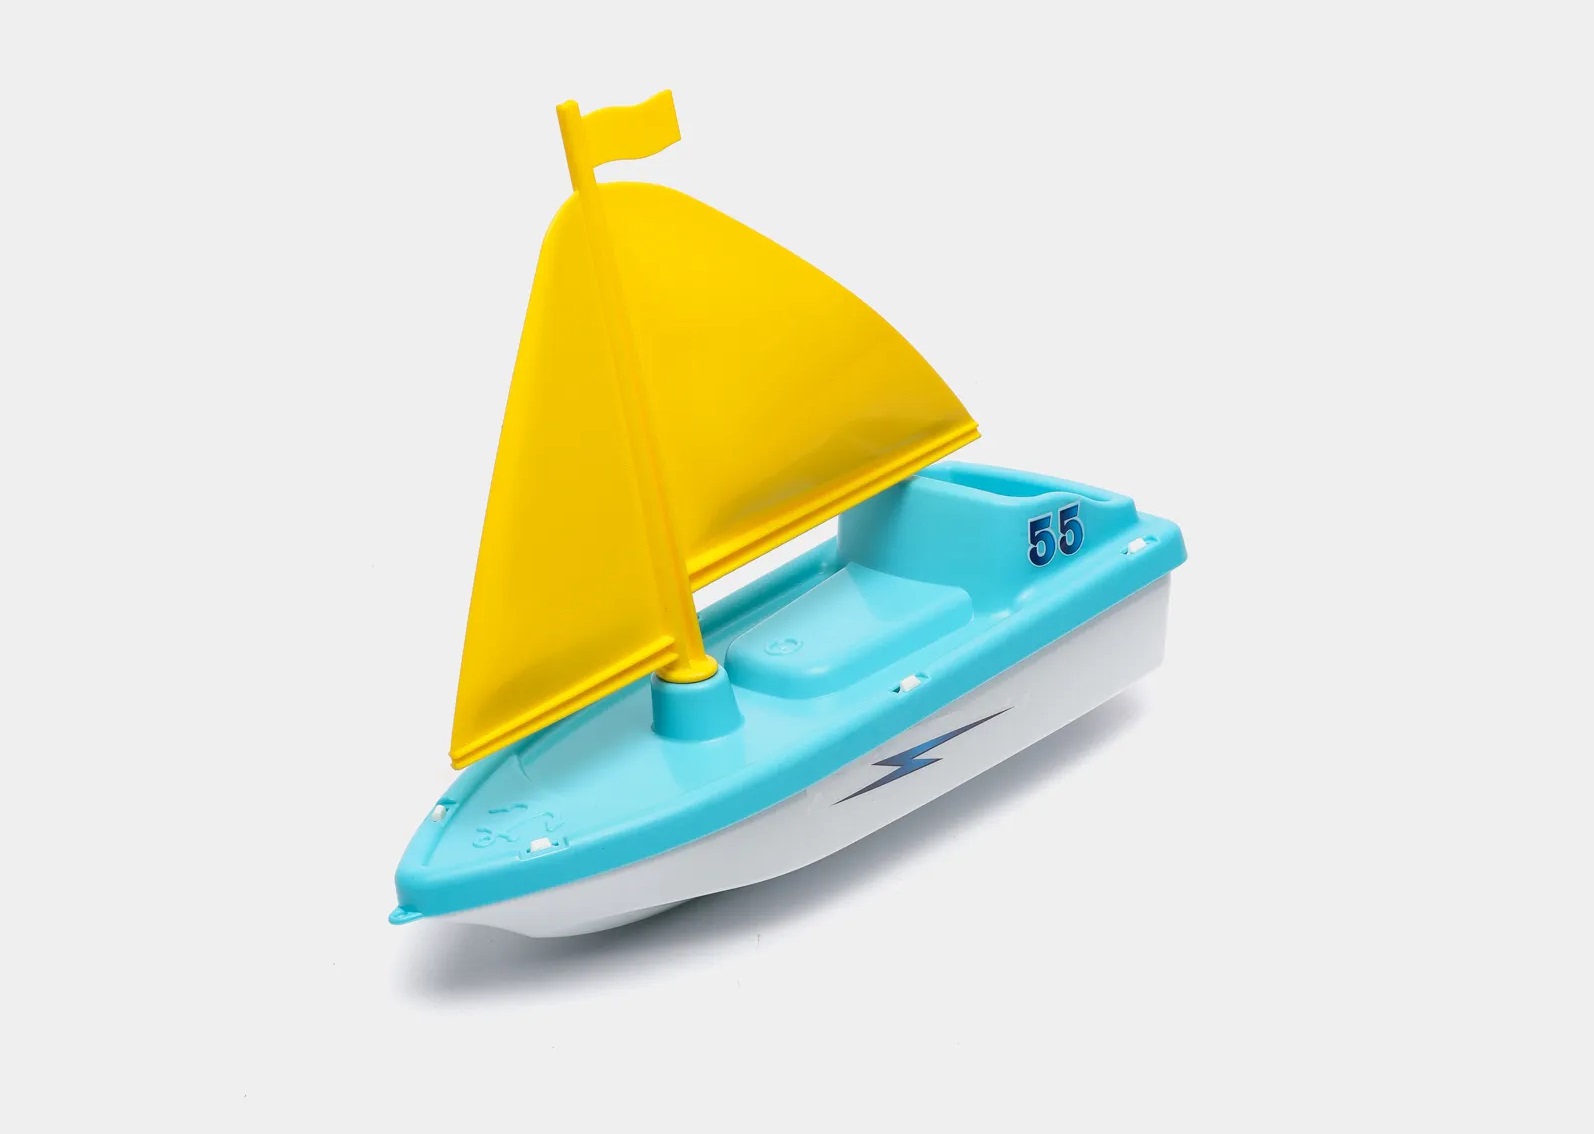 игрушечная яхта с голубой палубой и желтым парусом